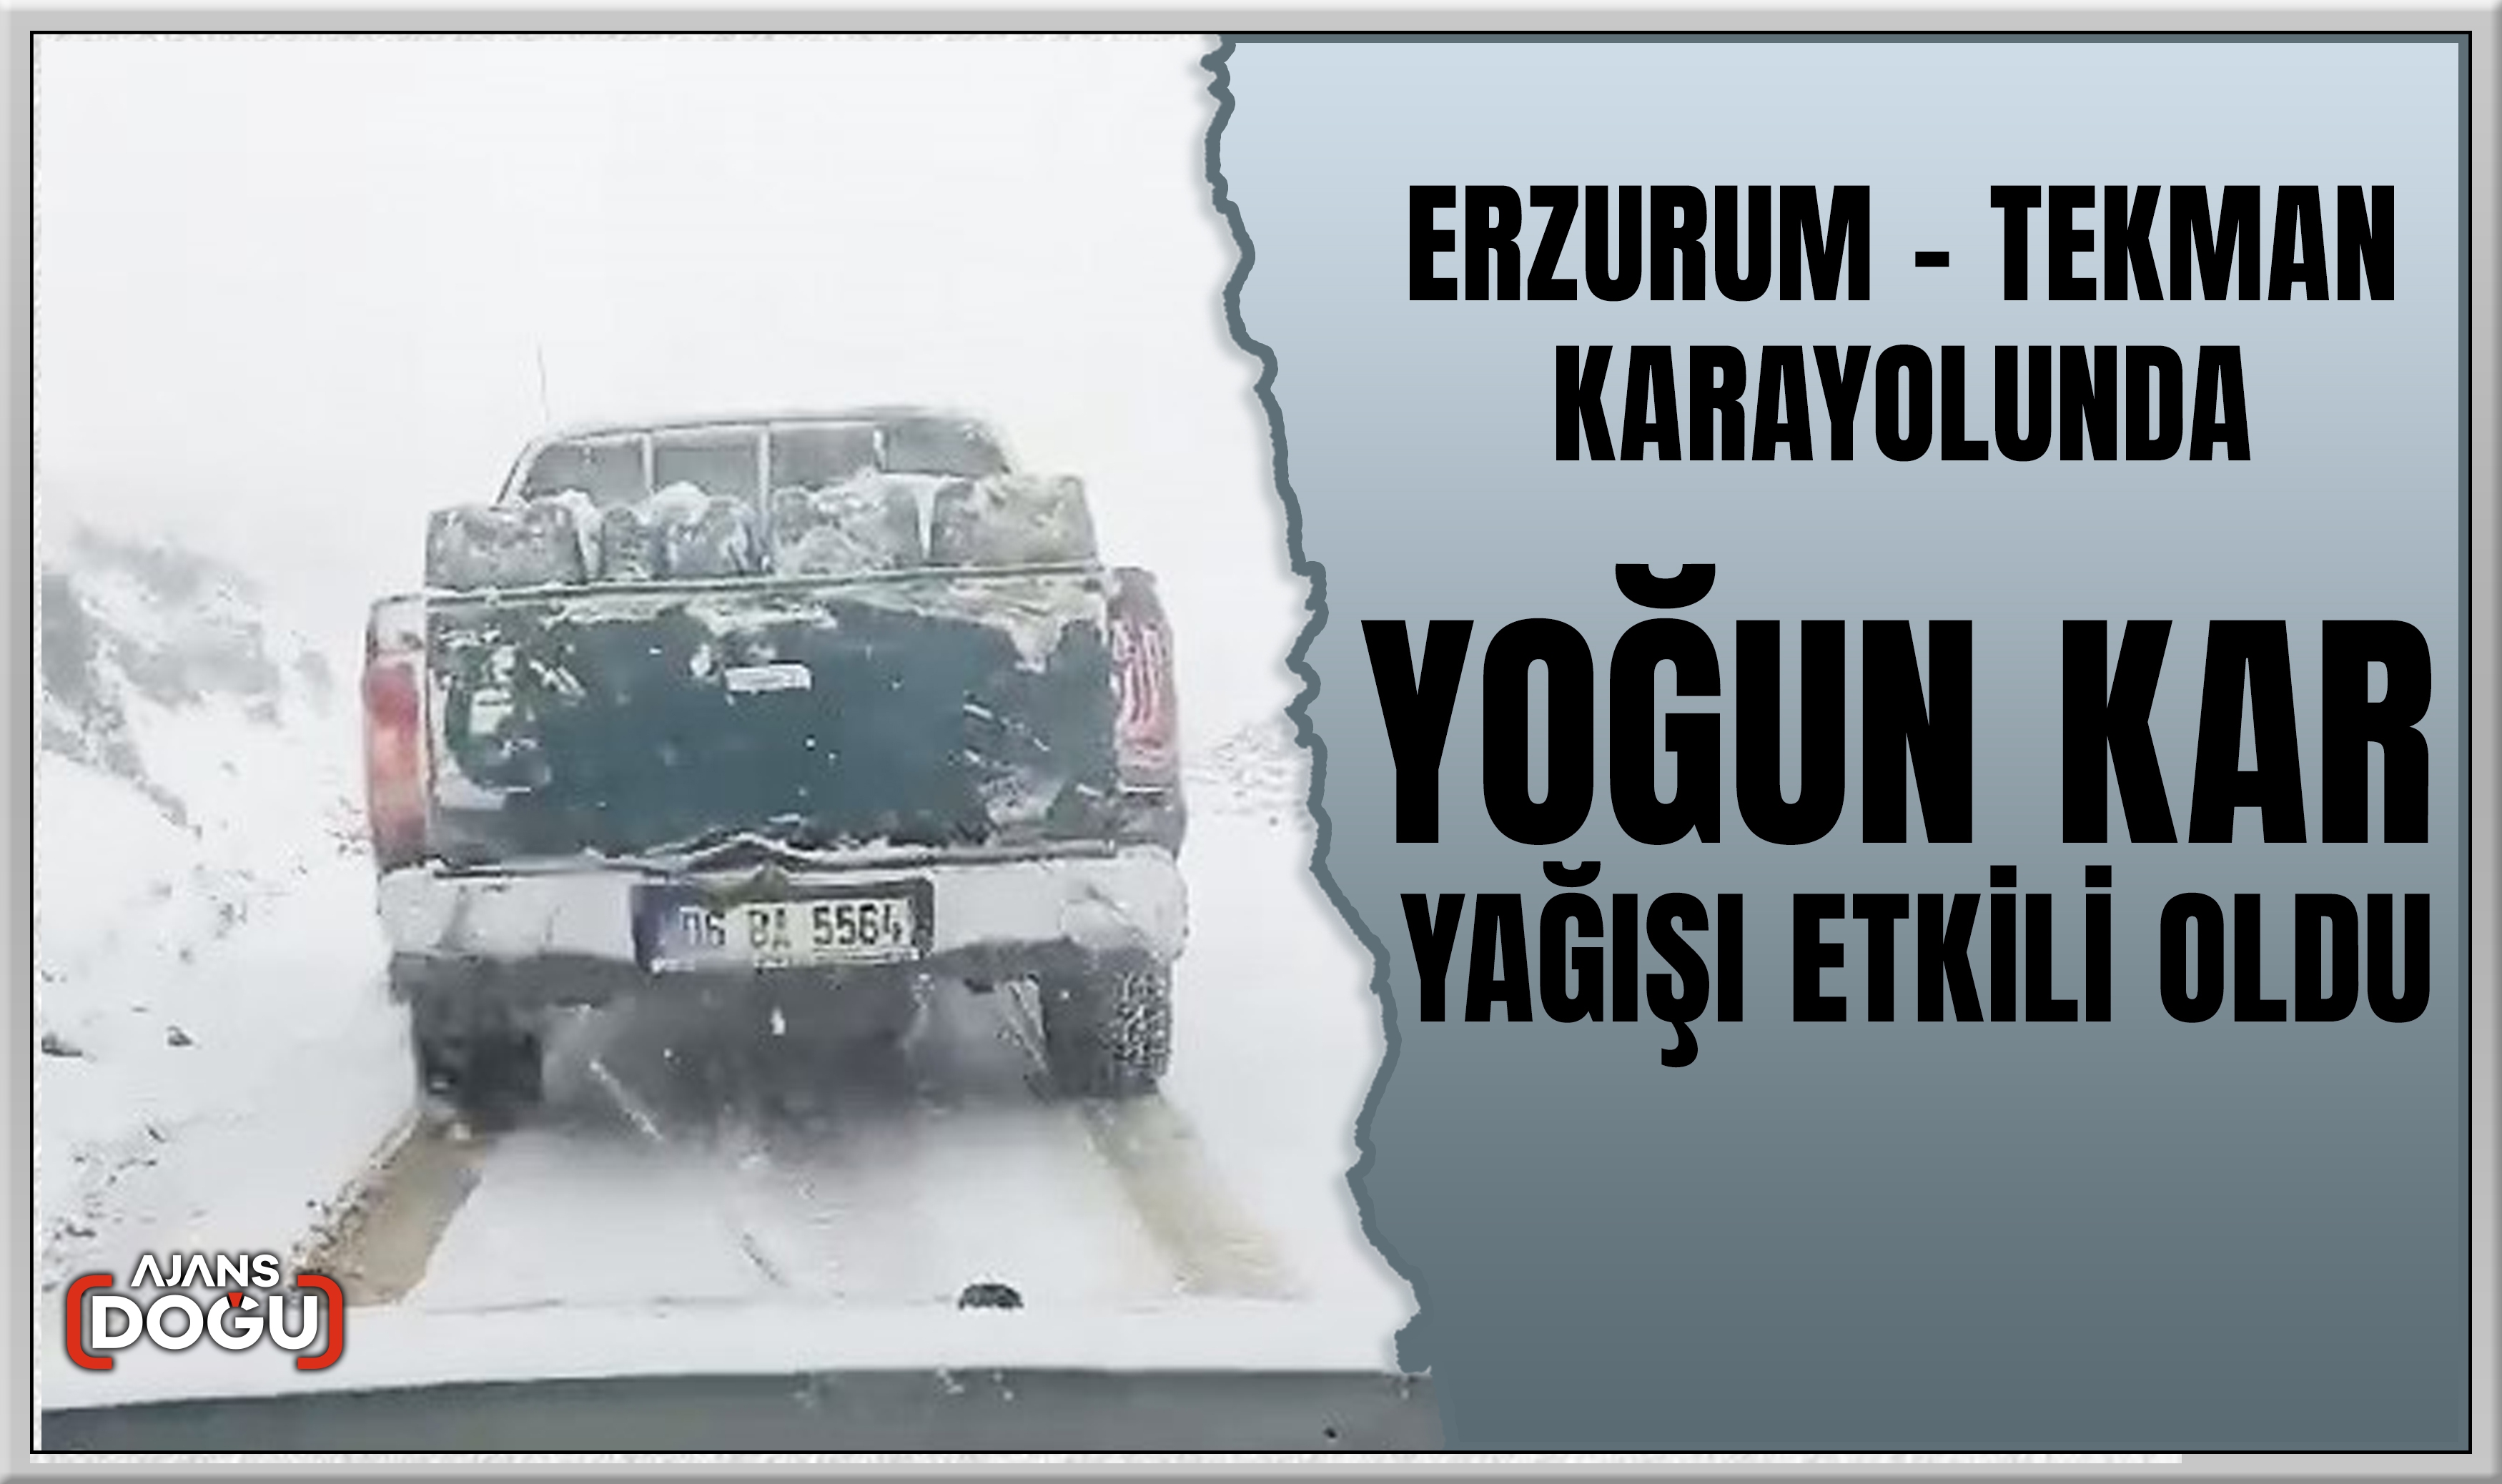 Erzurum - Tekman karayolunda kar yağışı etkili oldu